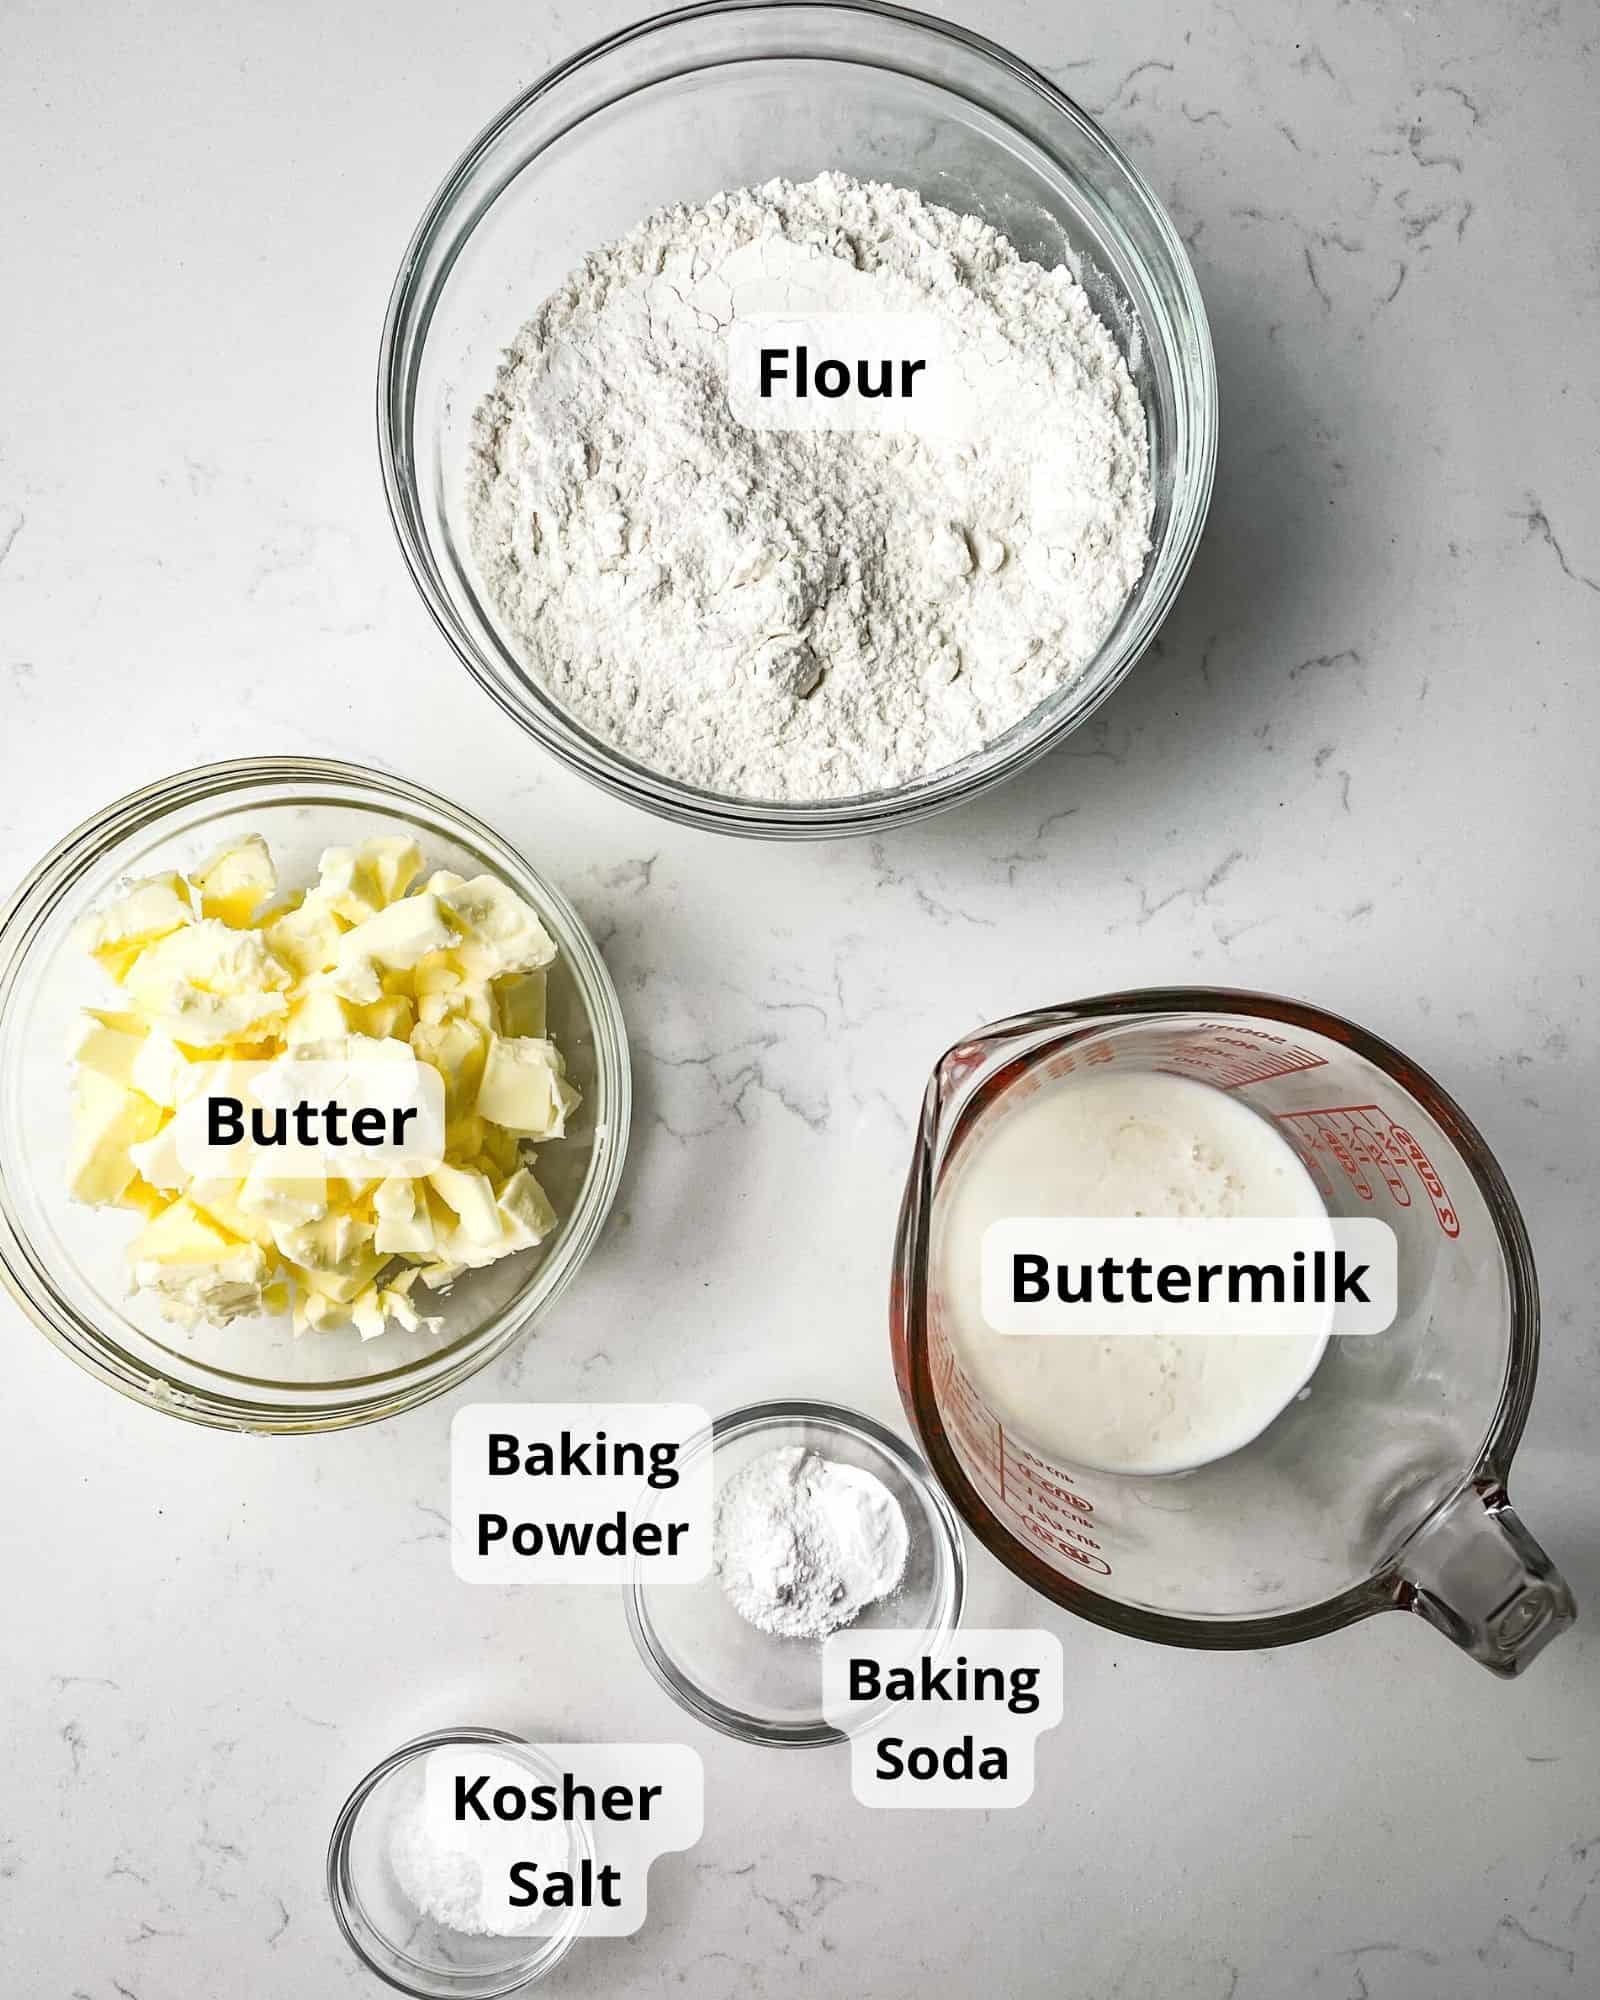 ingredients to make air fryer biscuits - flour, buttermilk, kosher salt, butter, baking powder, and baking soda.